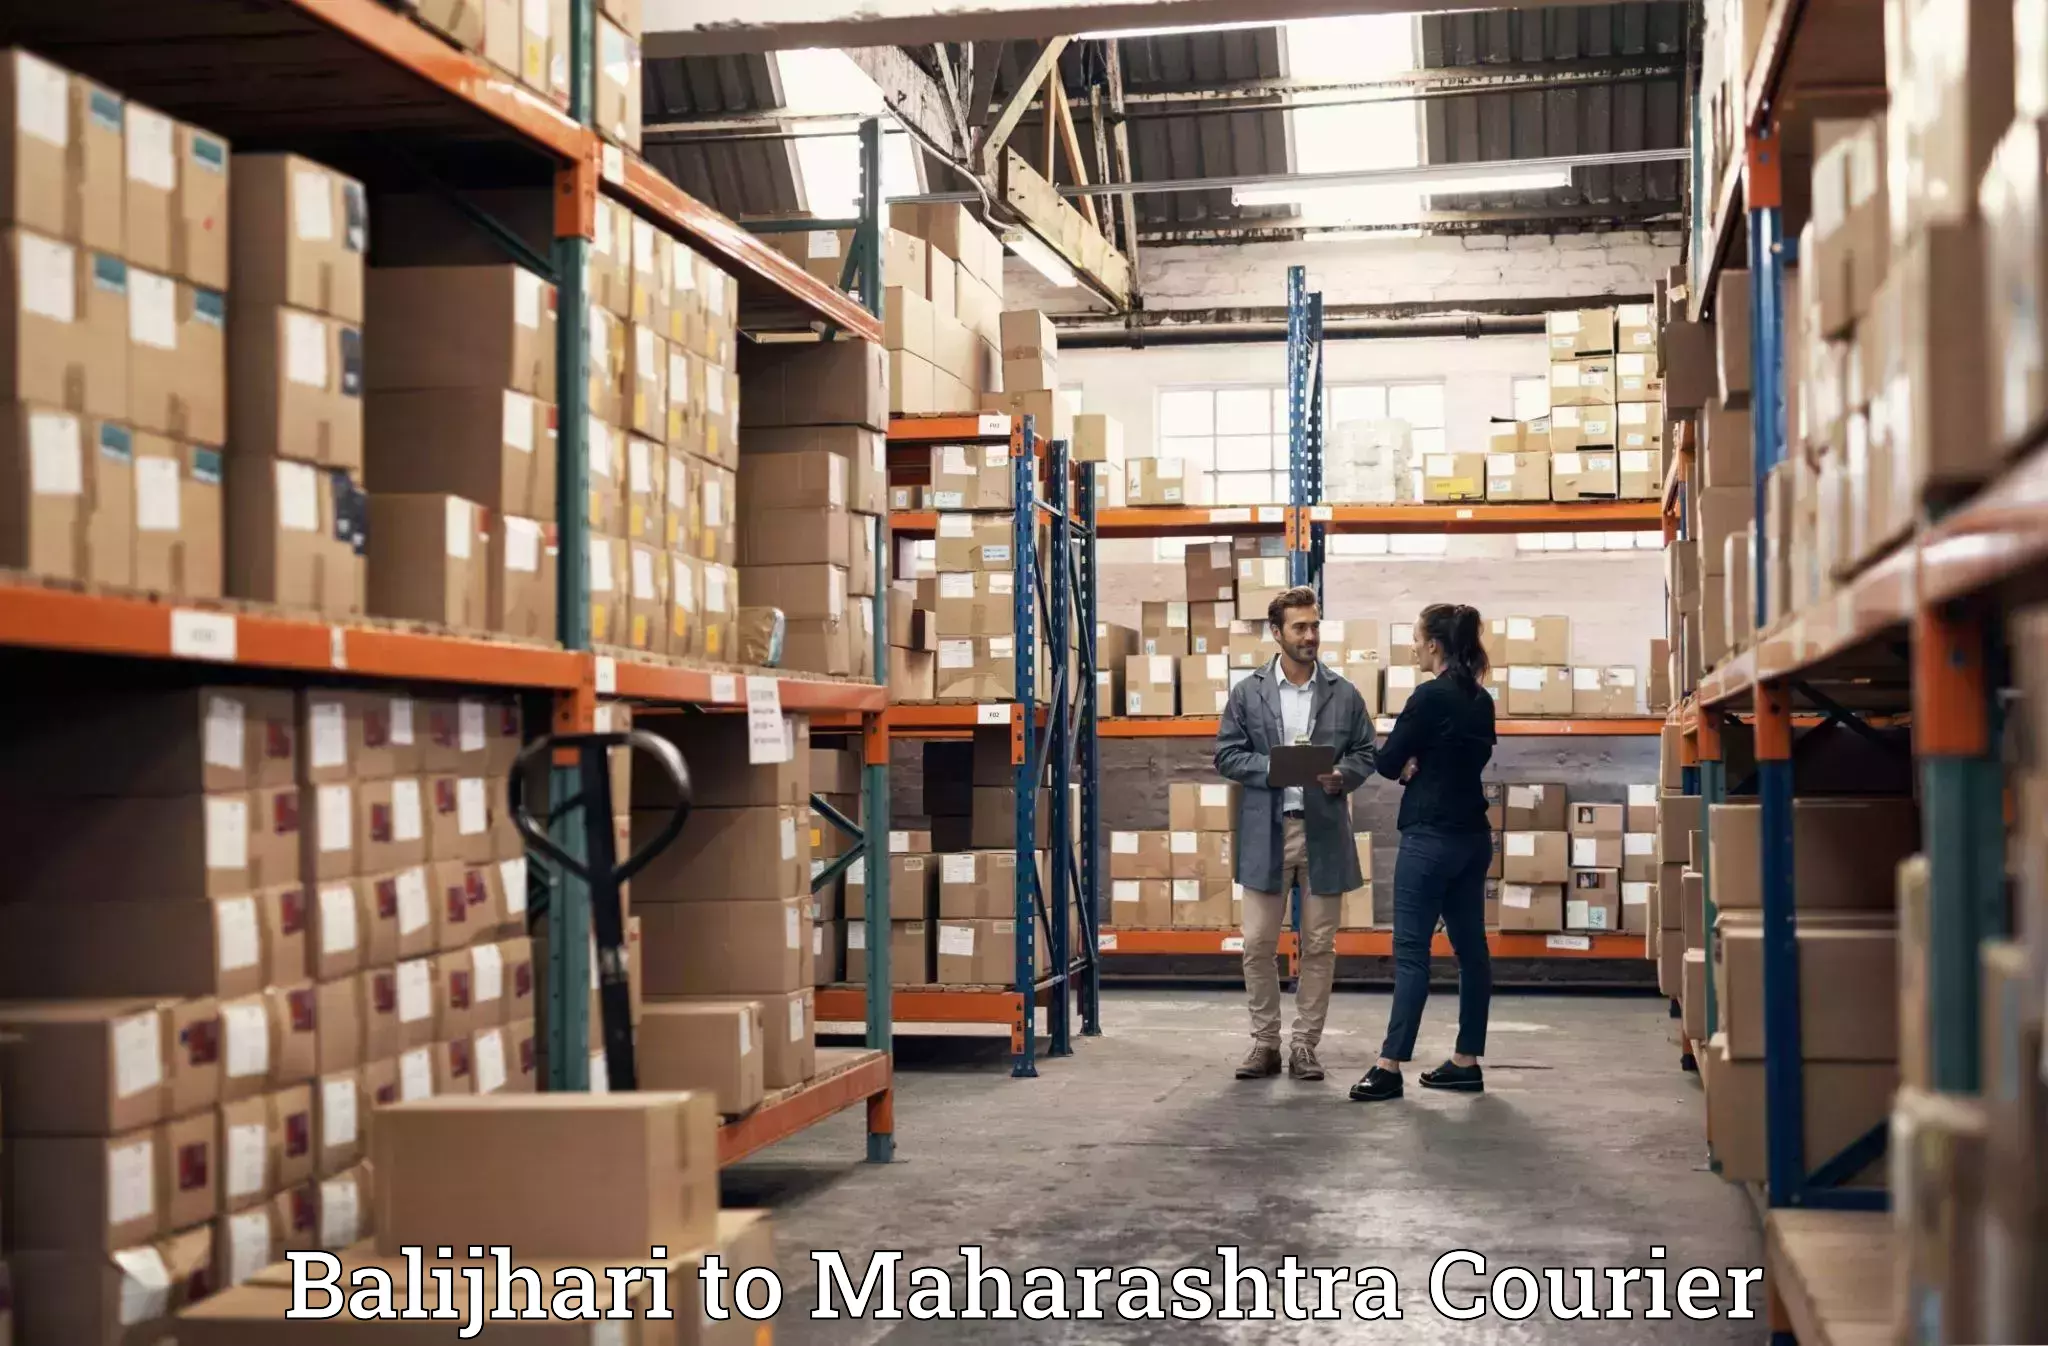 Quality moving services Balijhari to Maharashtra